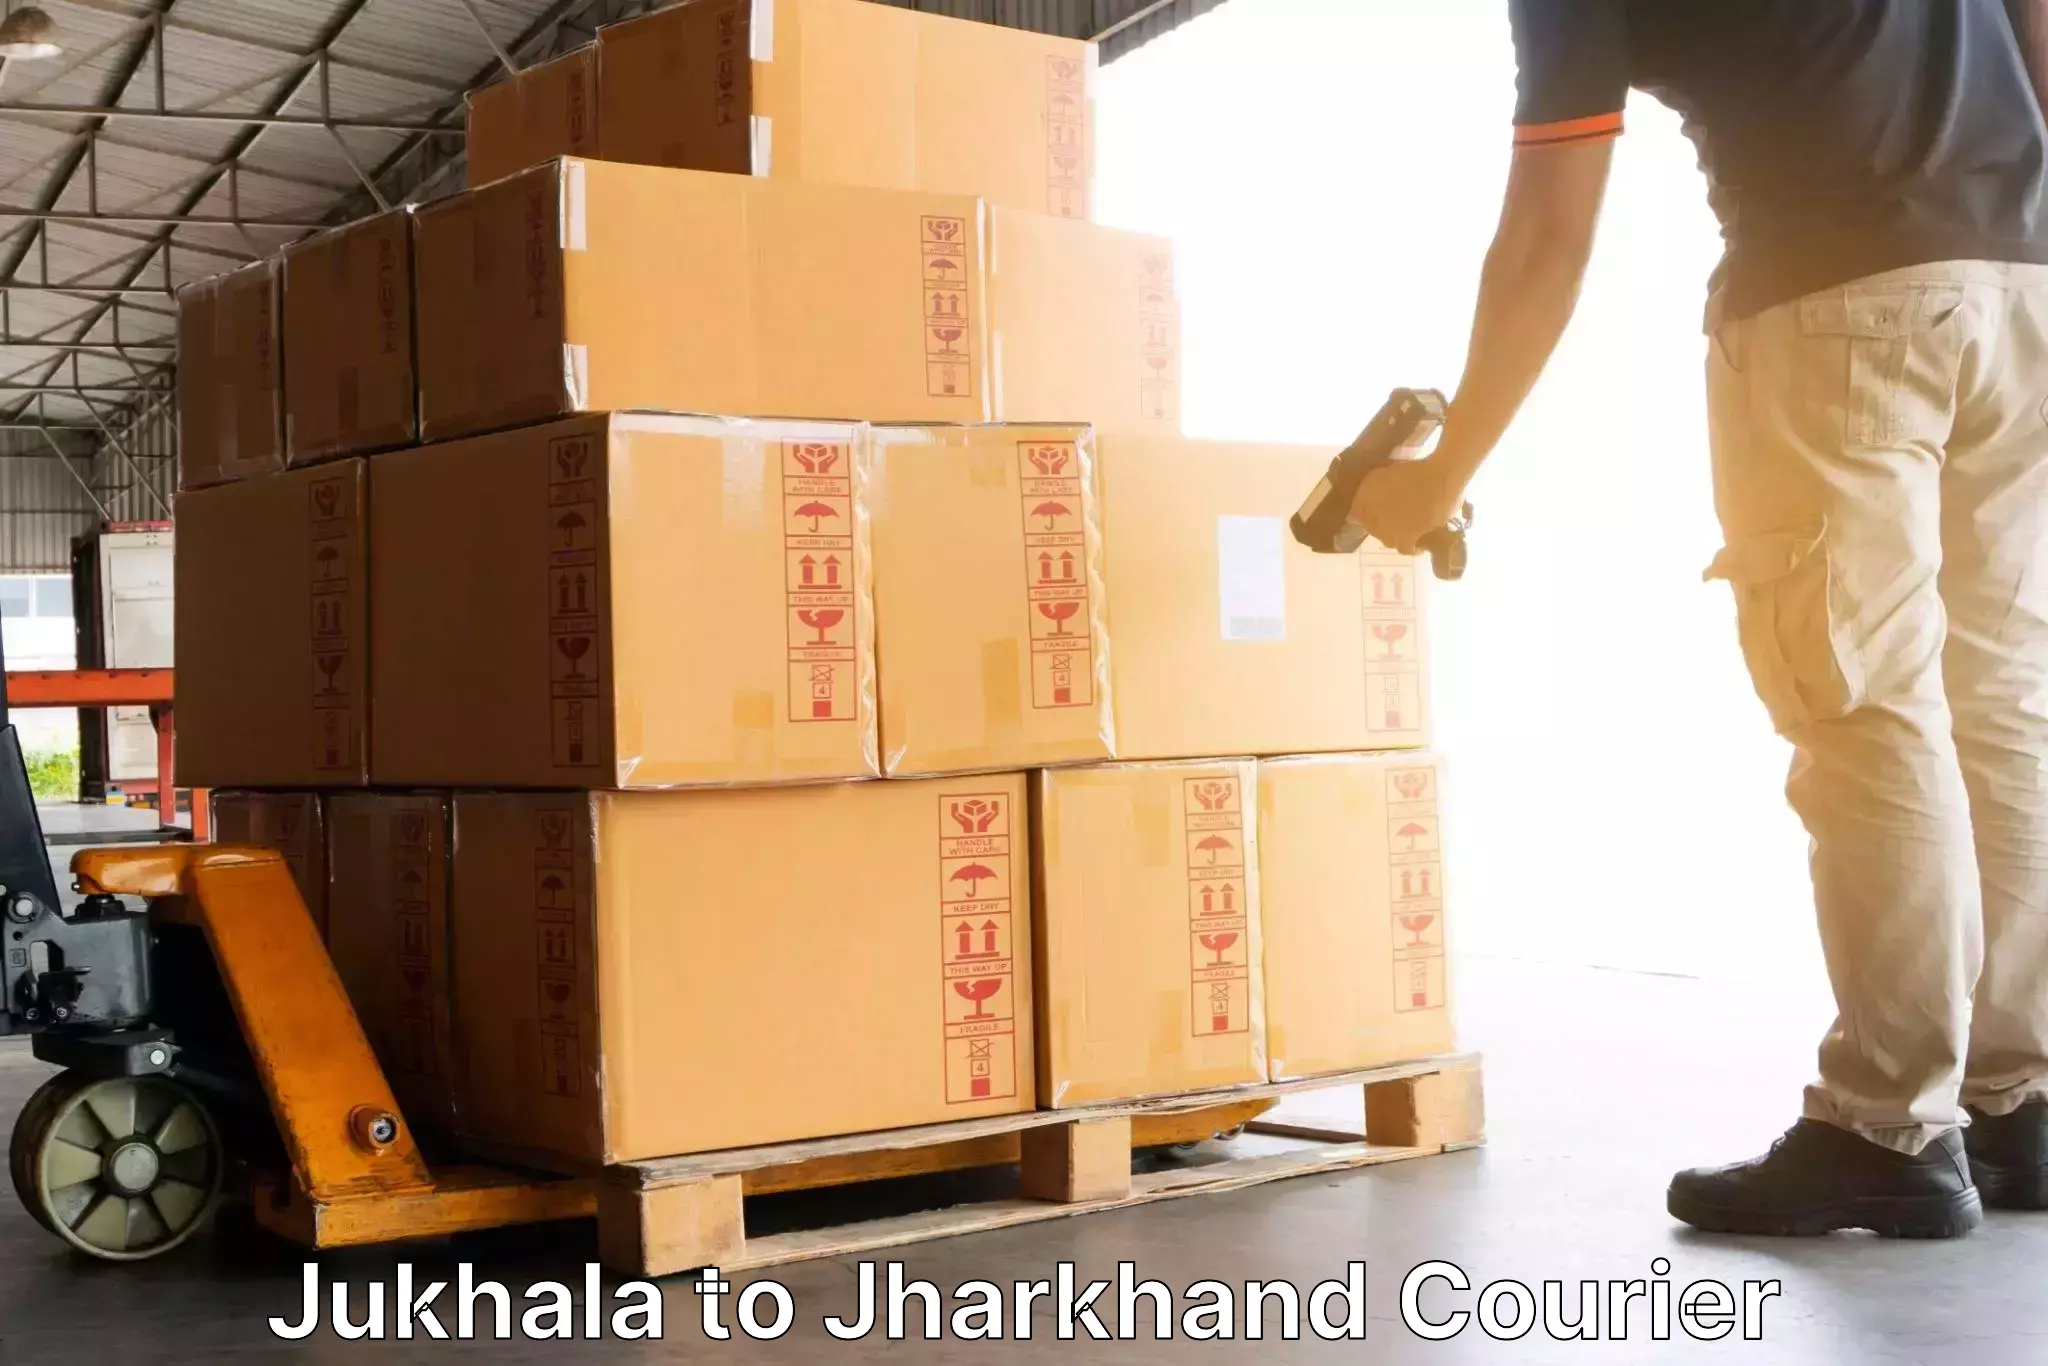 Express package services Jukhala to Godda